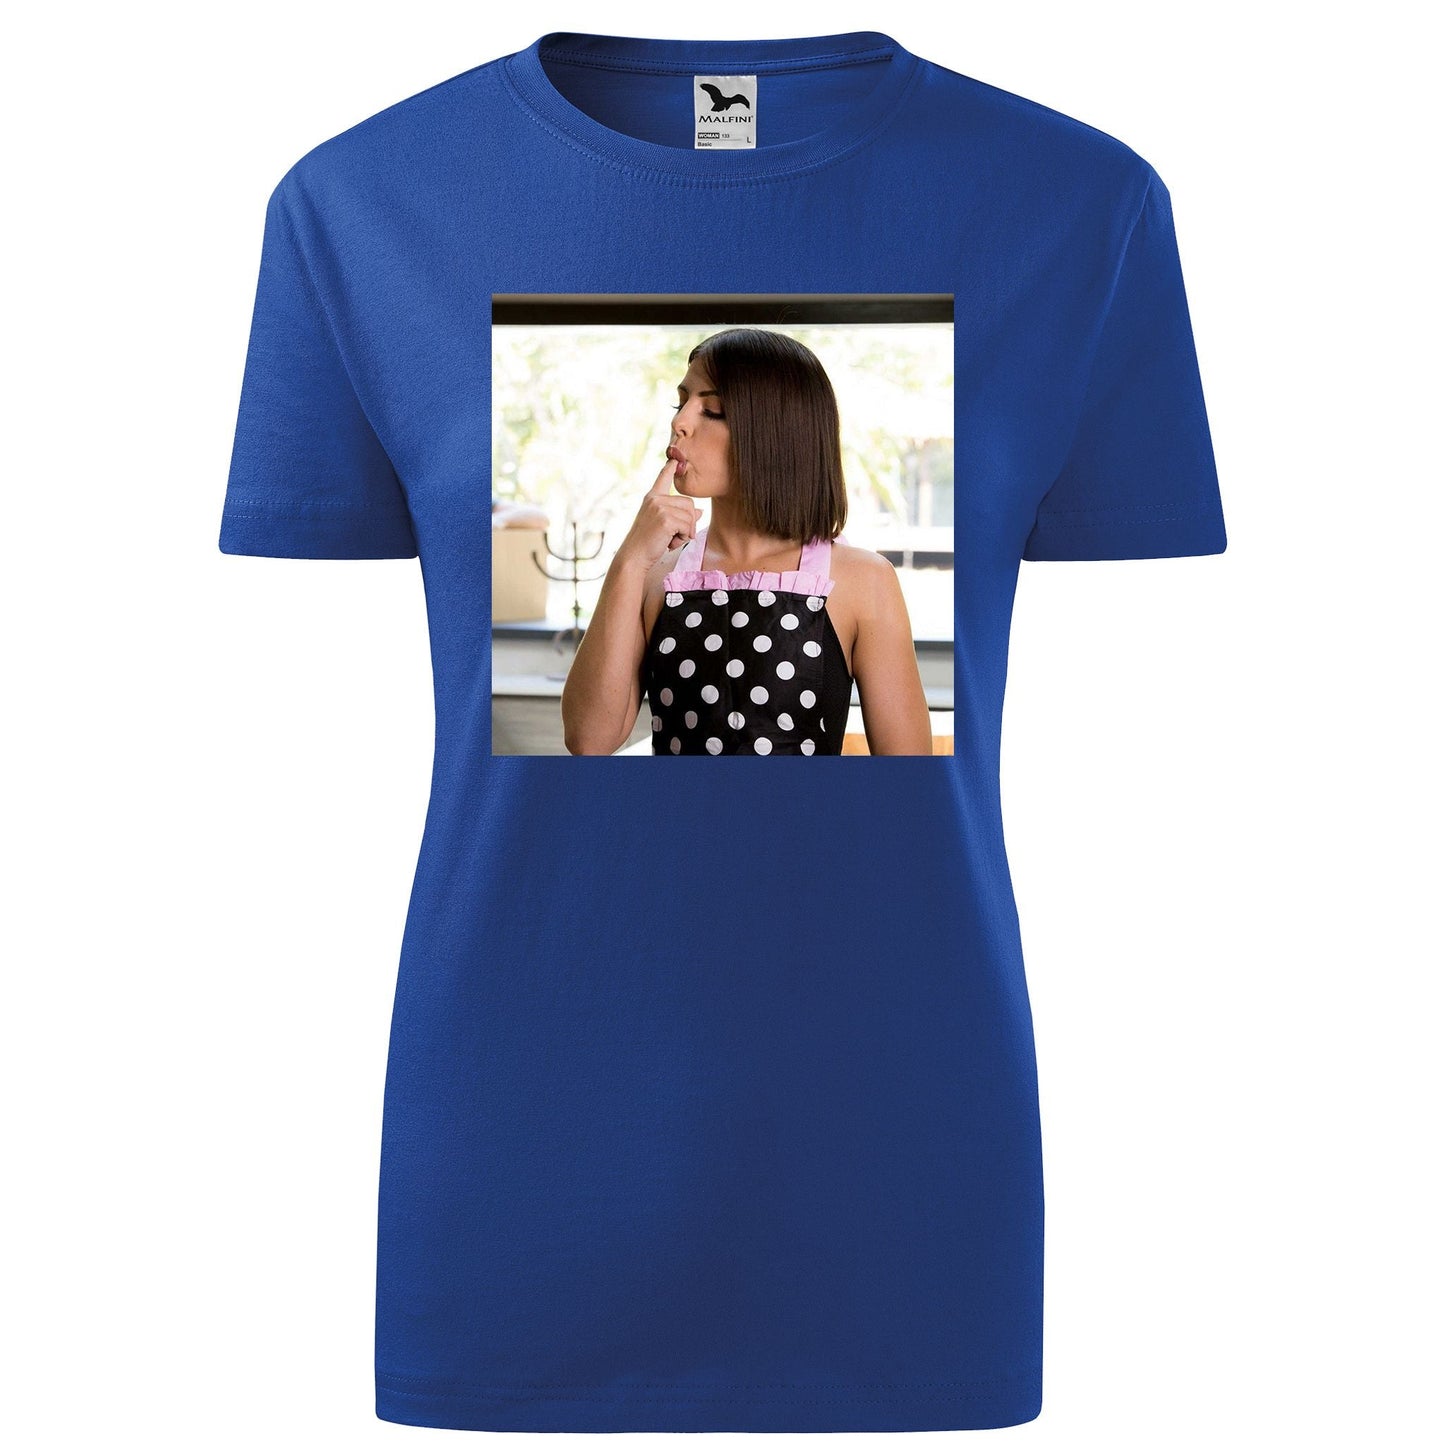 Adriana chechik t-shirt - rvdesignprint